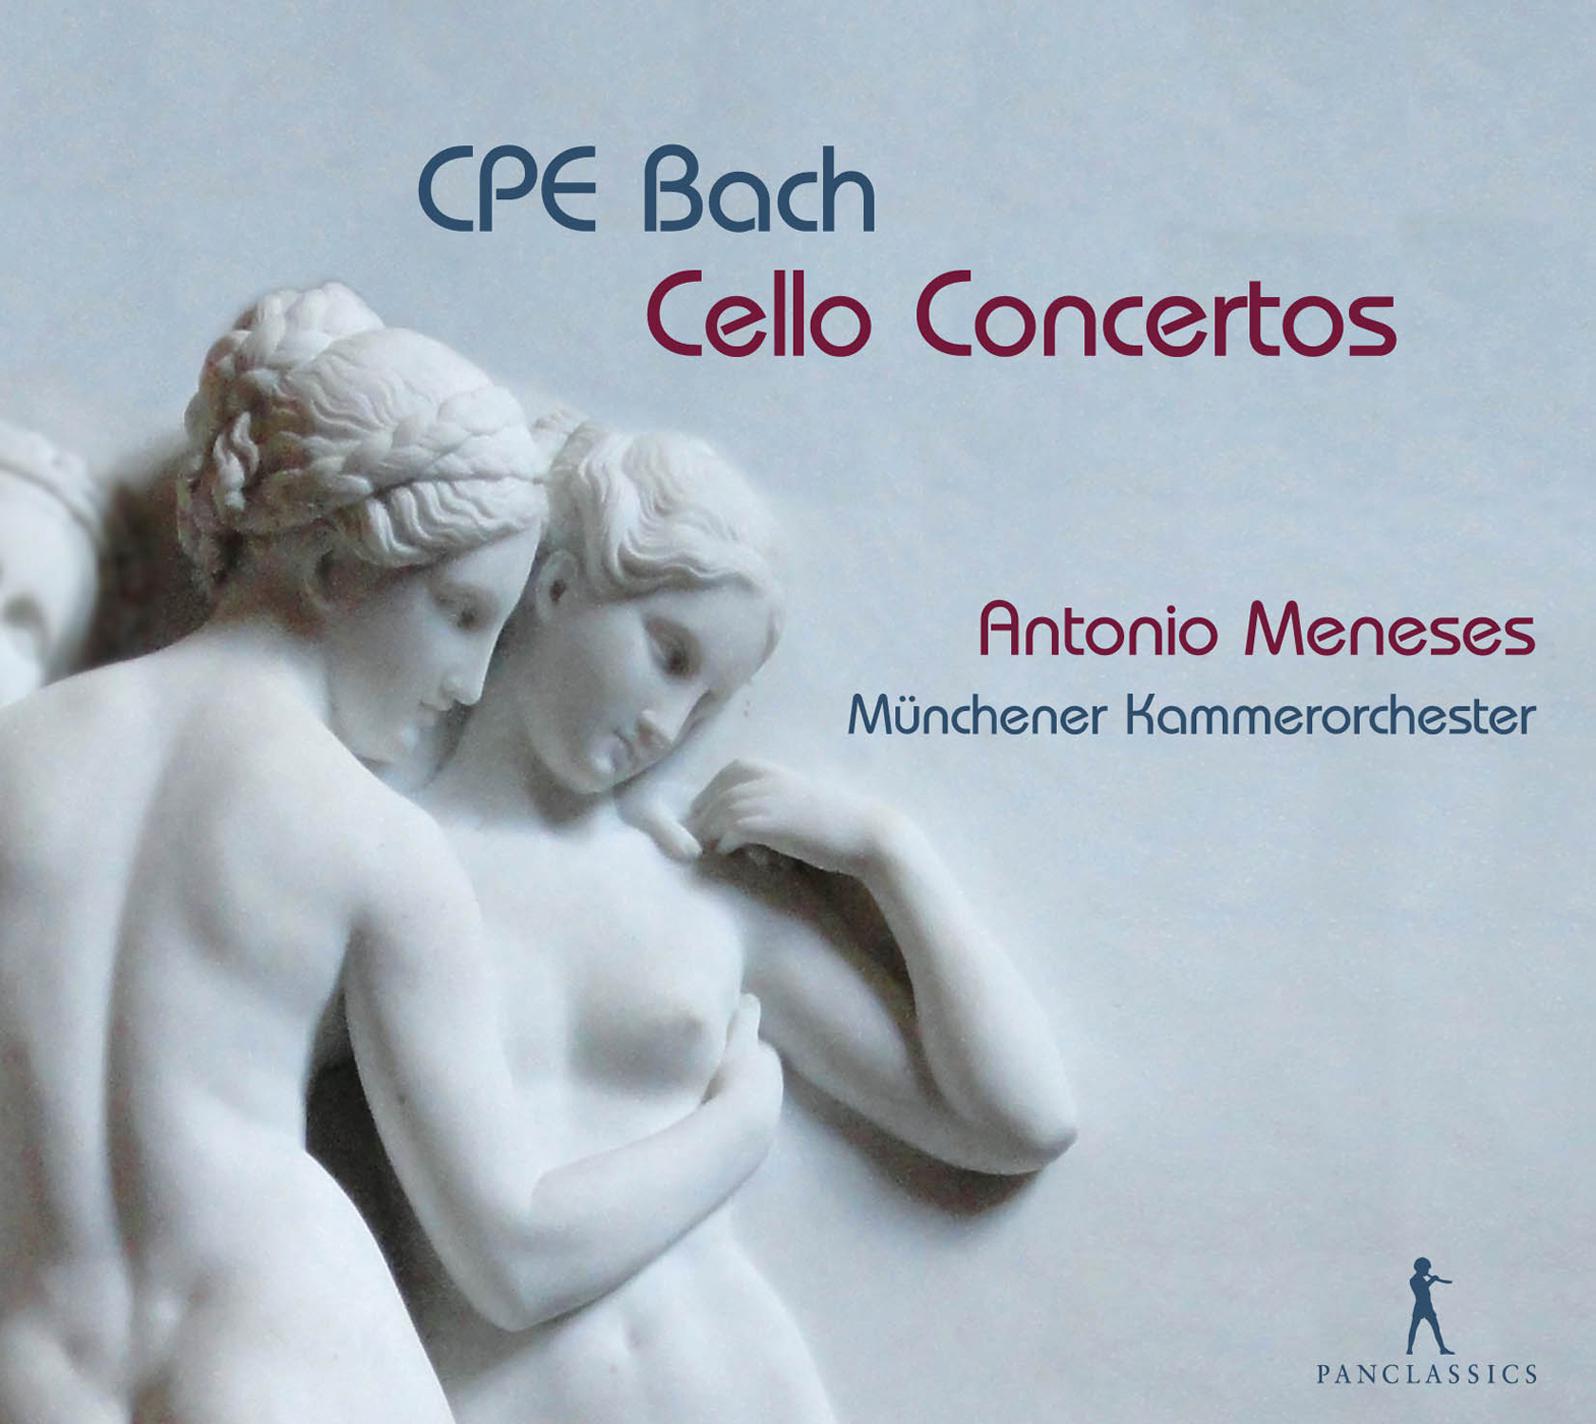 Cello Concerto in A Major, Wq. 172, H. 439: I. Allegro